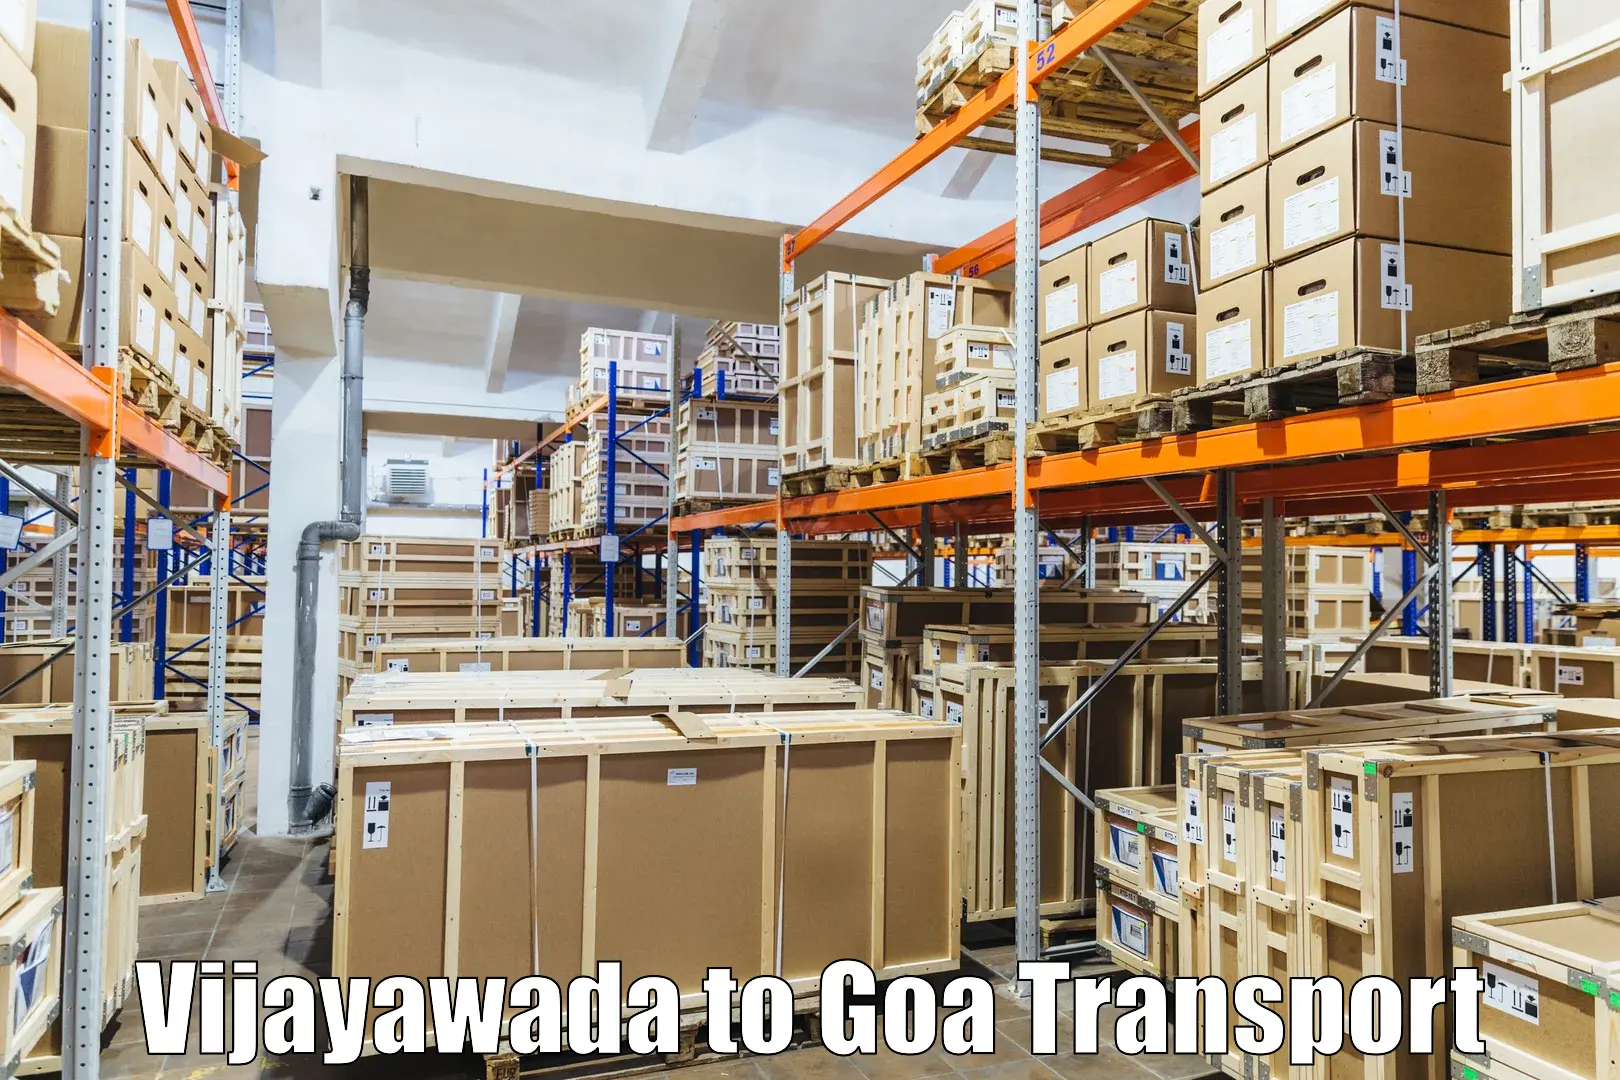 Daily parcel service transport Vijayawada to Panjim